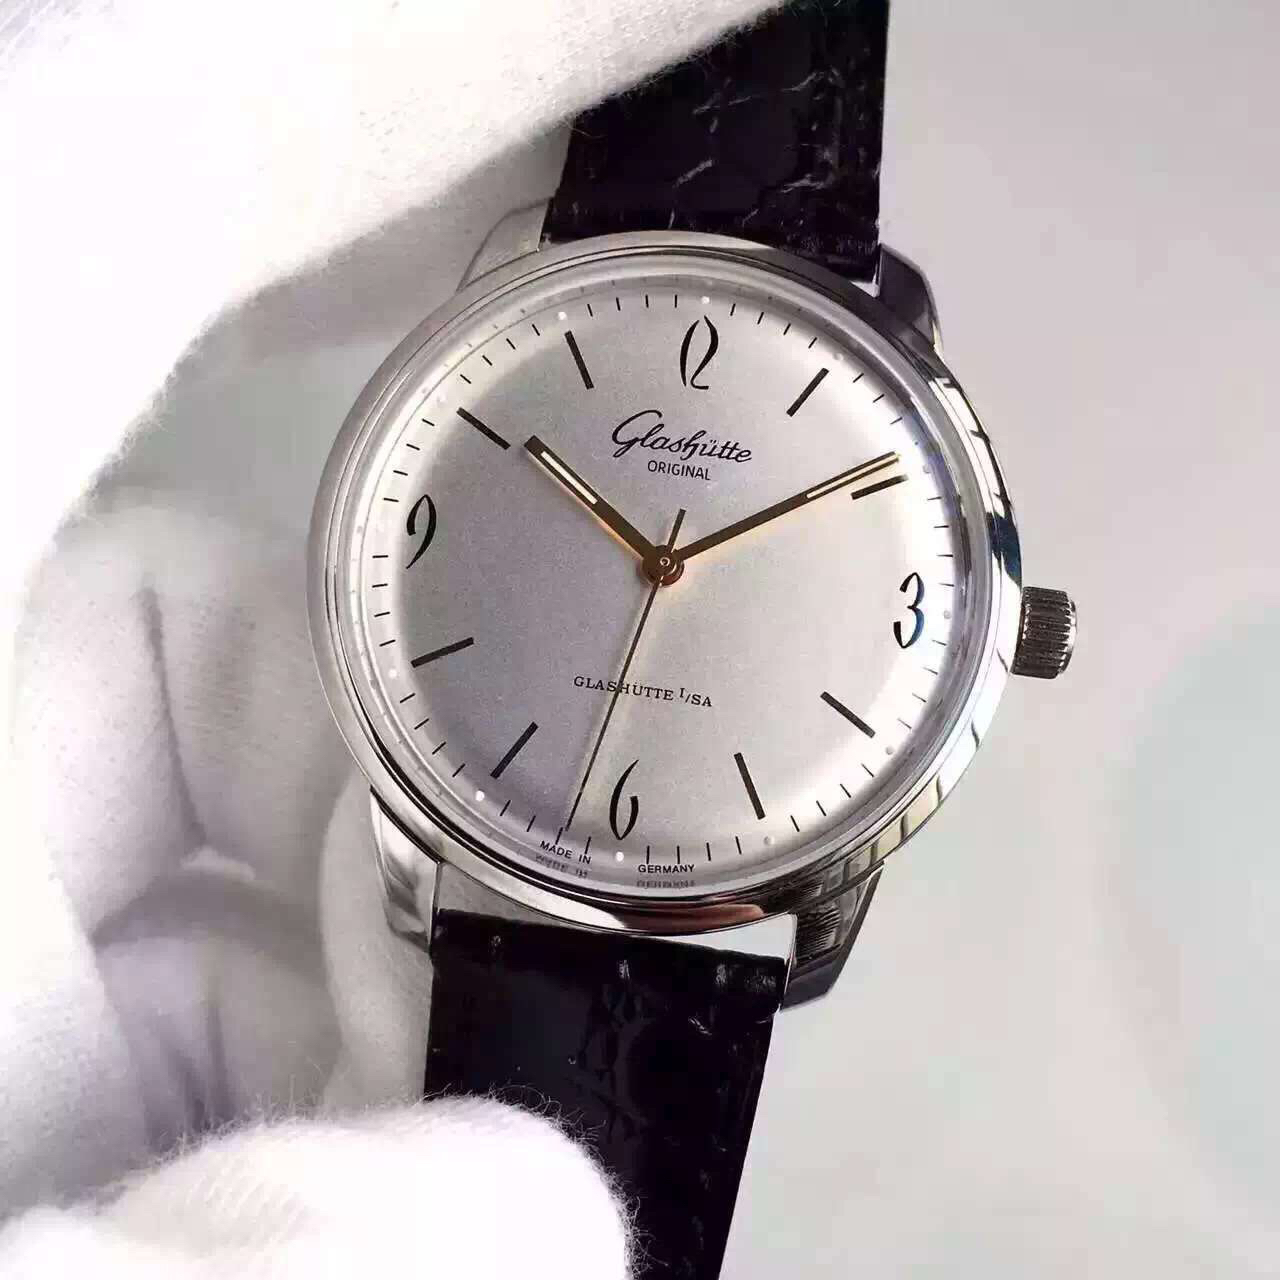 格拉蘇蒂高仿手錶價格及圖片 FK格拉蘇蒂原創20世紀復古1-39-52-01-02-04￥2980-高仿格拉蘇蒂